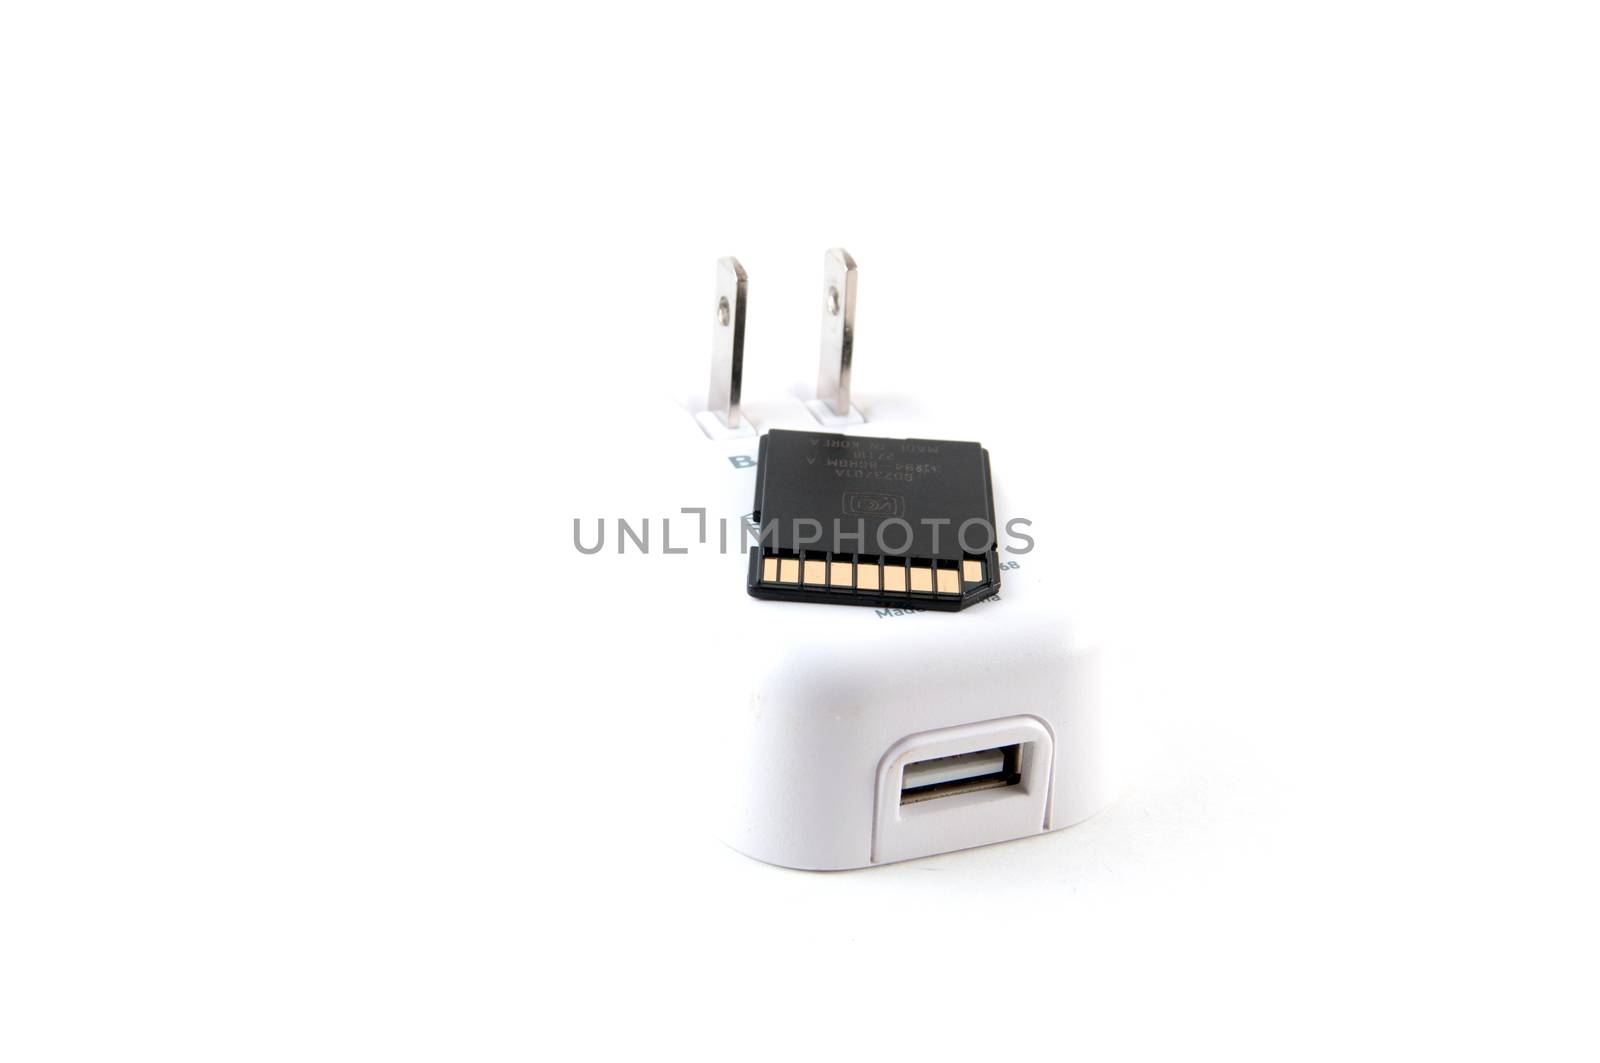 Wall plug USB and an SD memory card